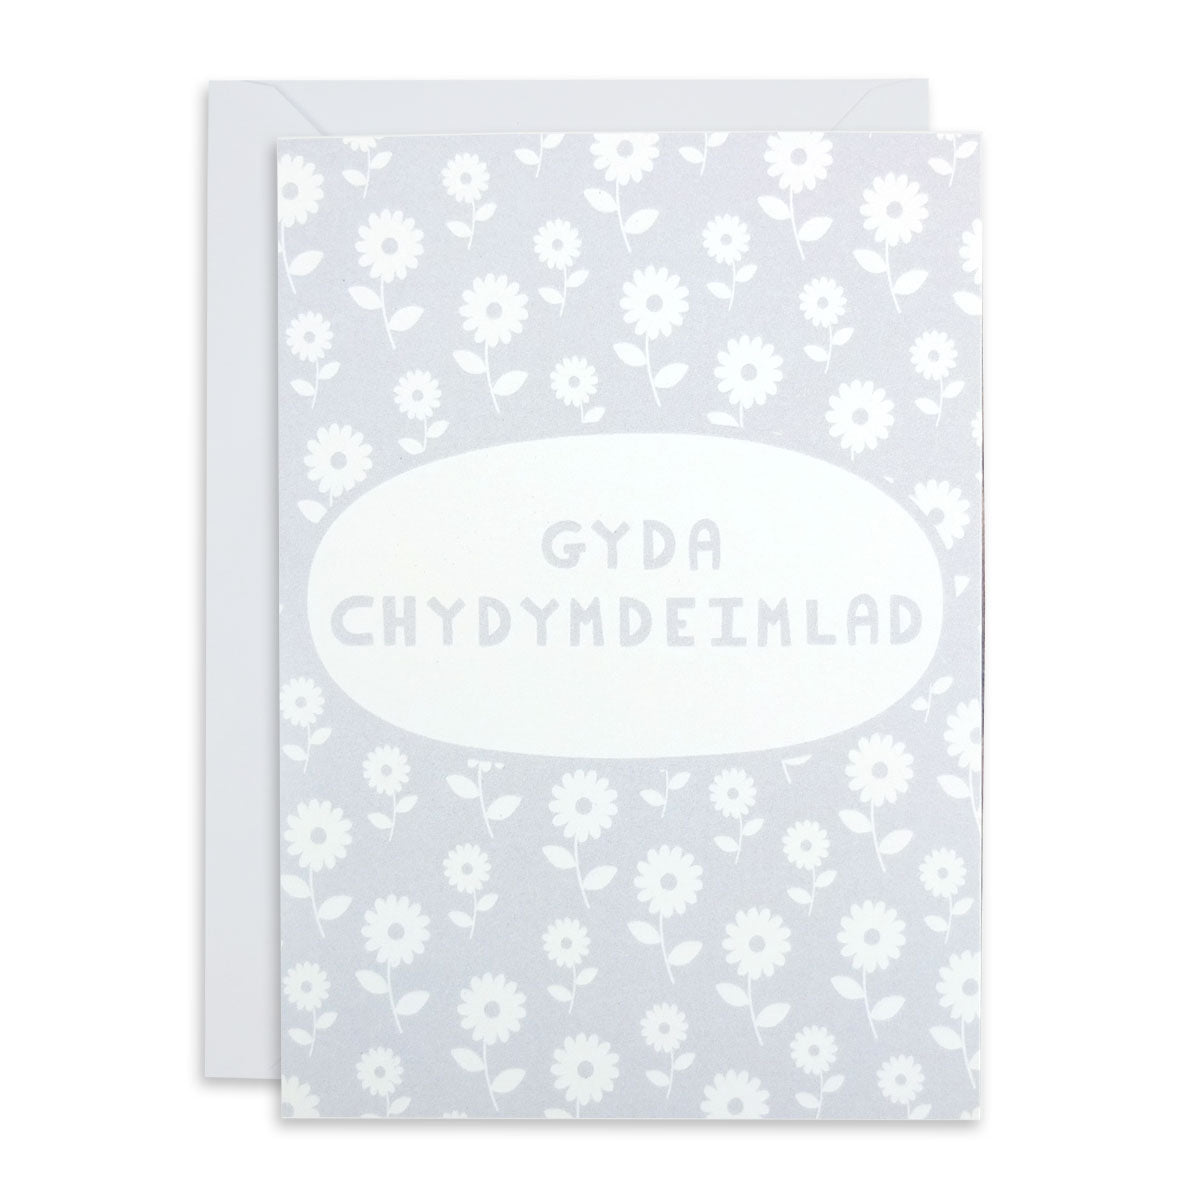 Gyda Chydymdeimlad Card